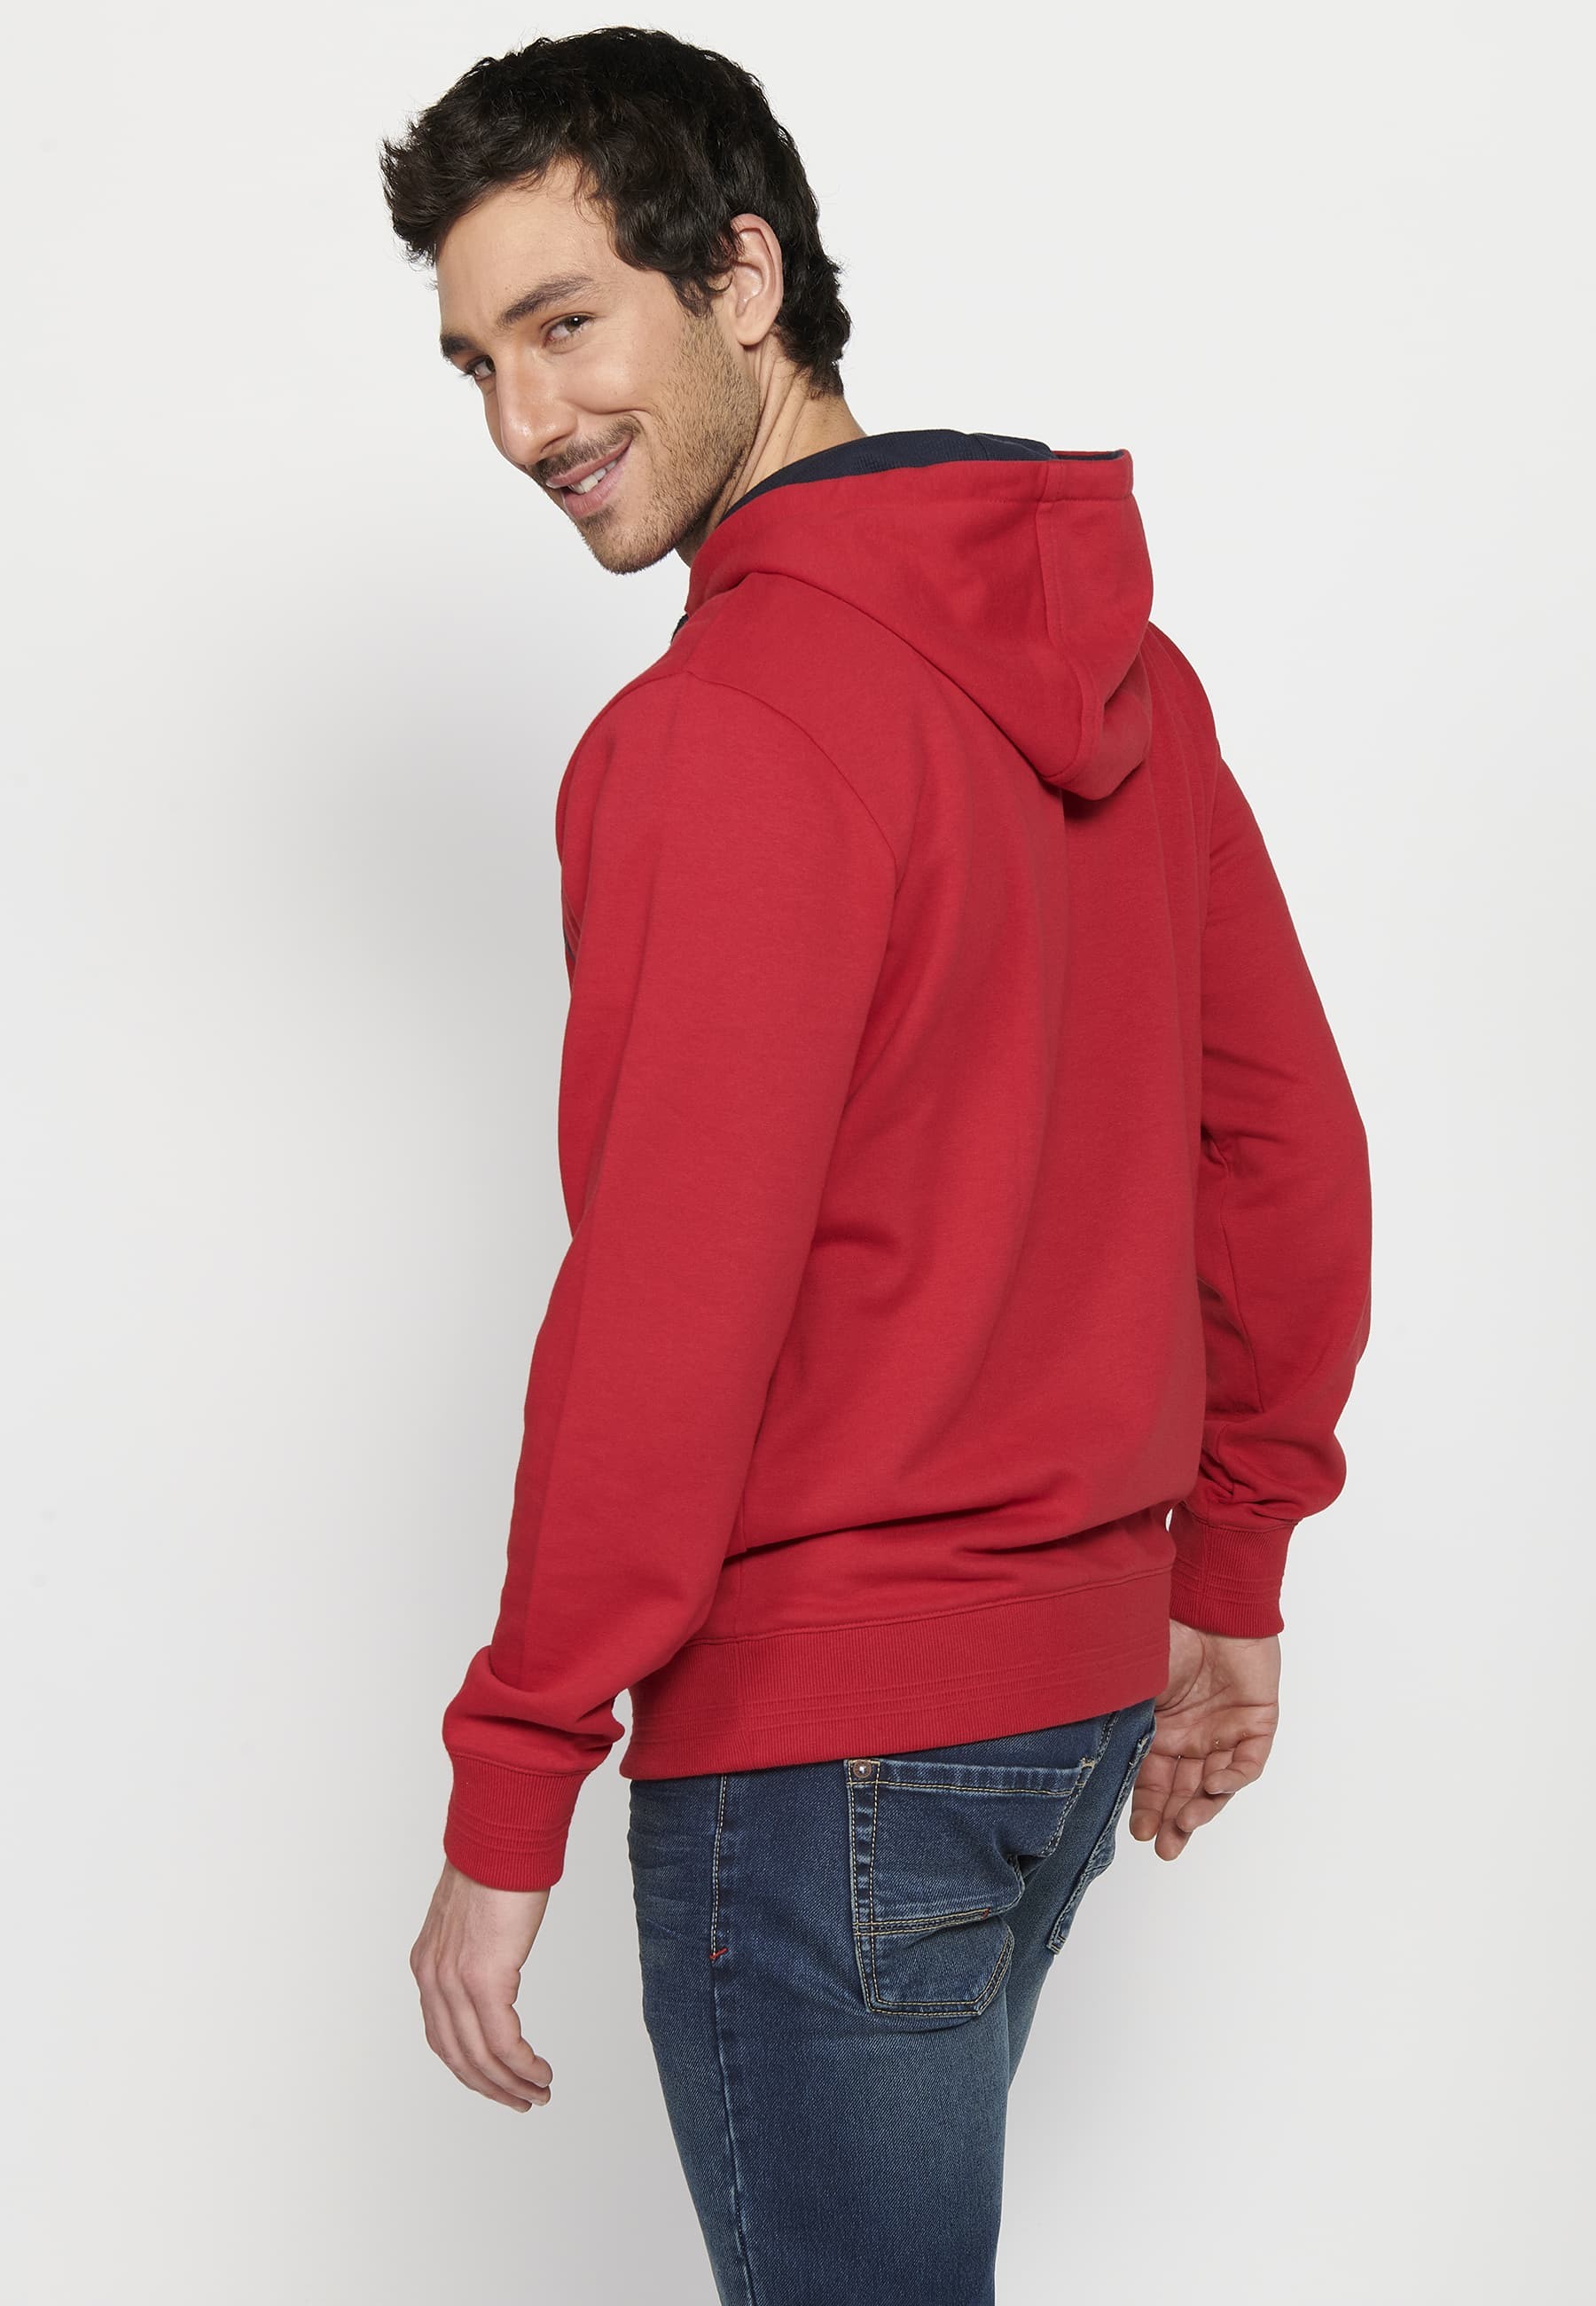 Sudadera de manga larga con Cuello con capucha y Detalle en relieve delantero de Color Rojo para Hombre 6